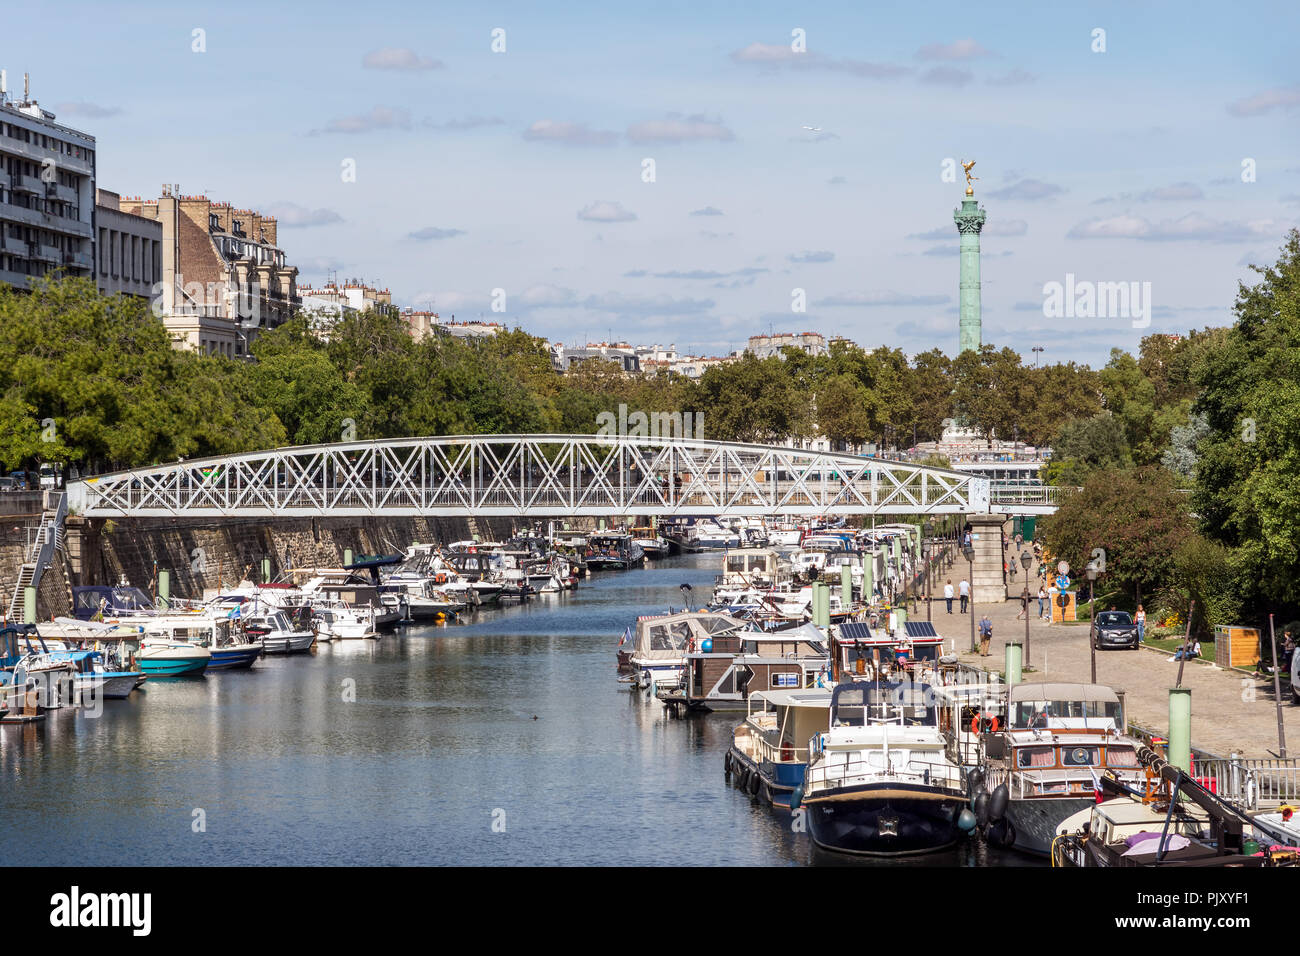 Canal Saint Martin - Paris Stock Photo